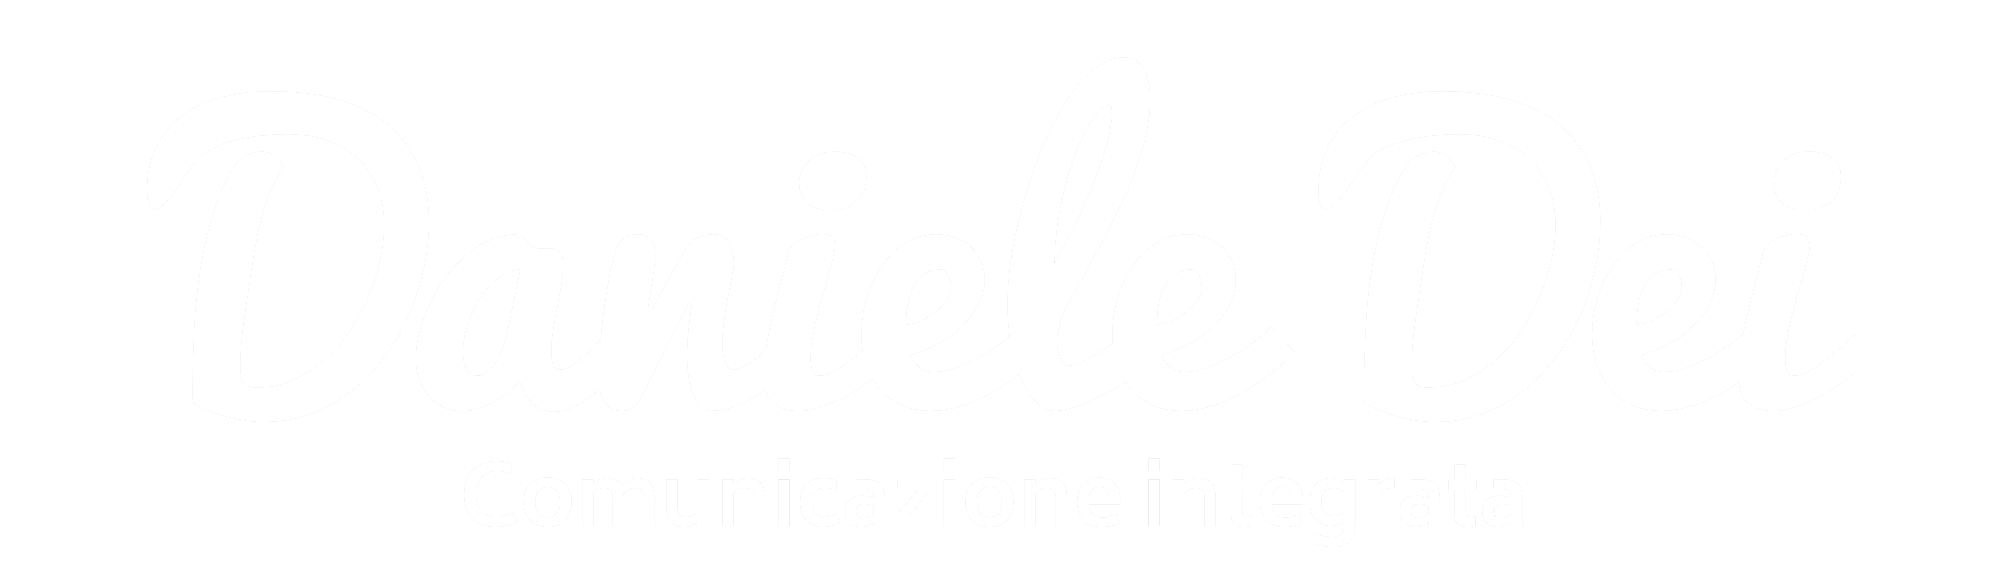 Daniele Dei | Comunicazione integrata